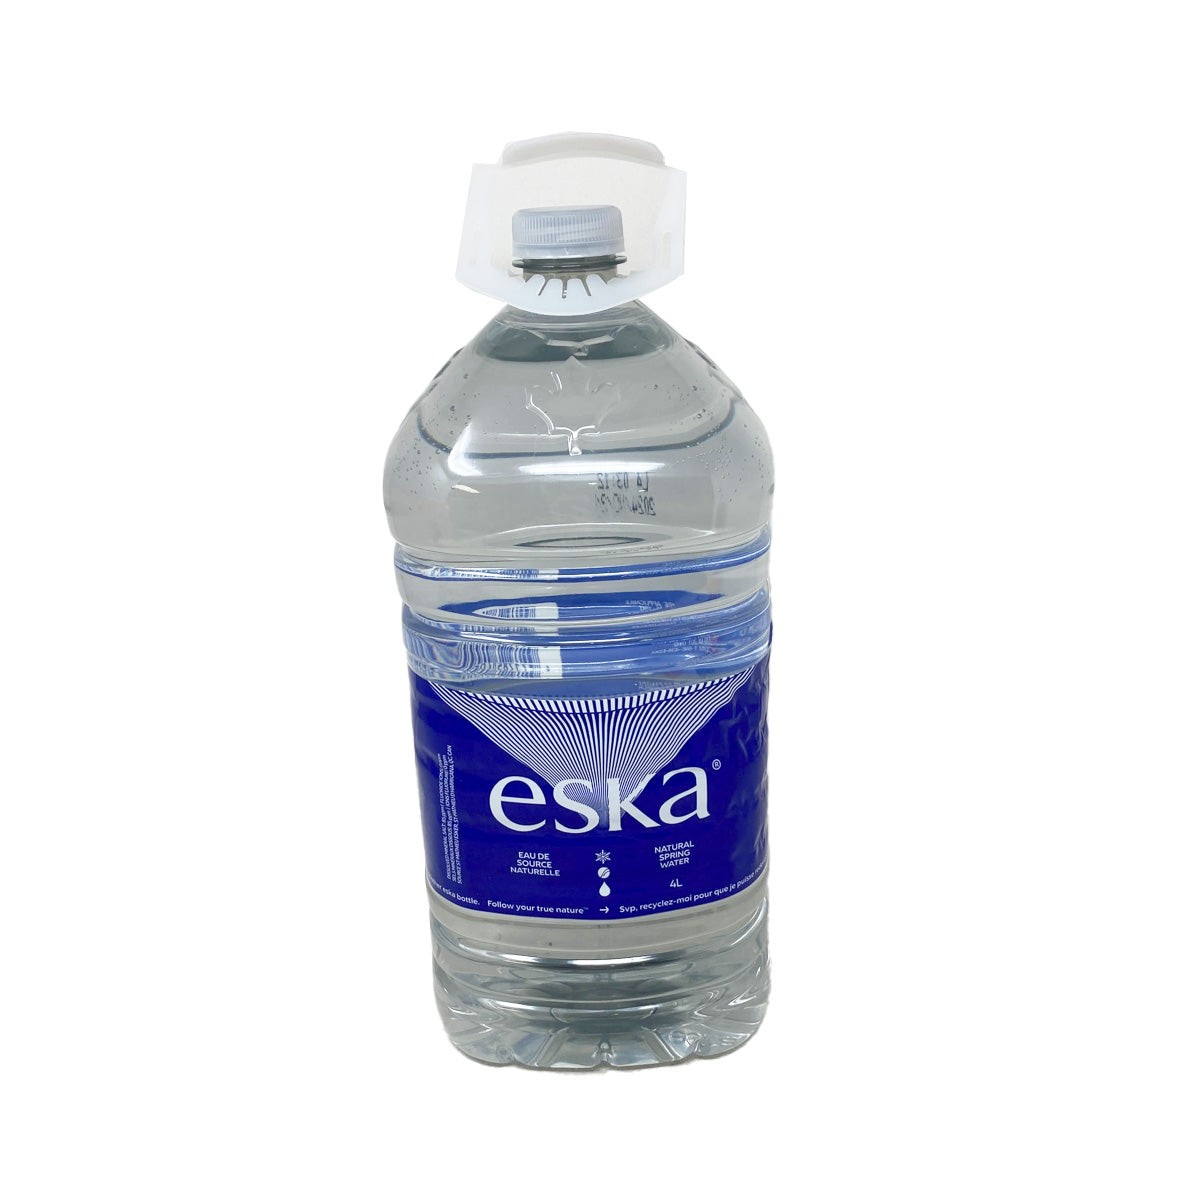 limit-2-per-order-eska-demineralized-water-4l